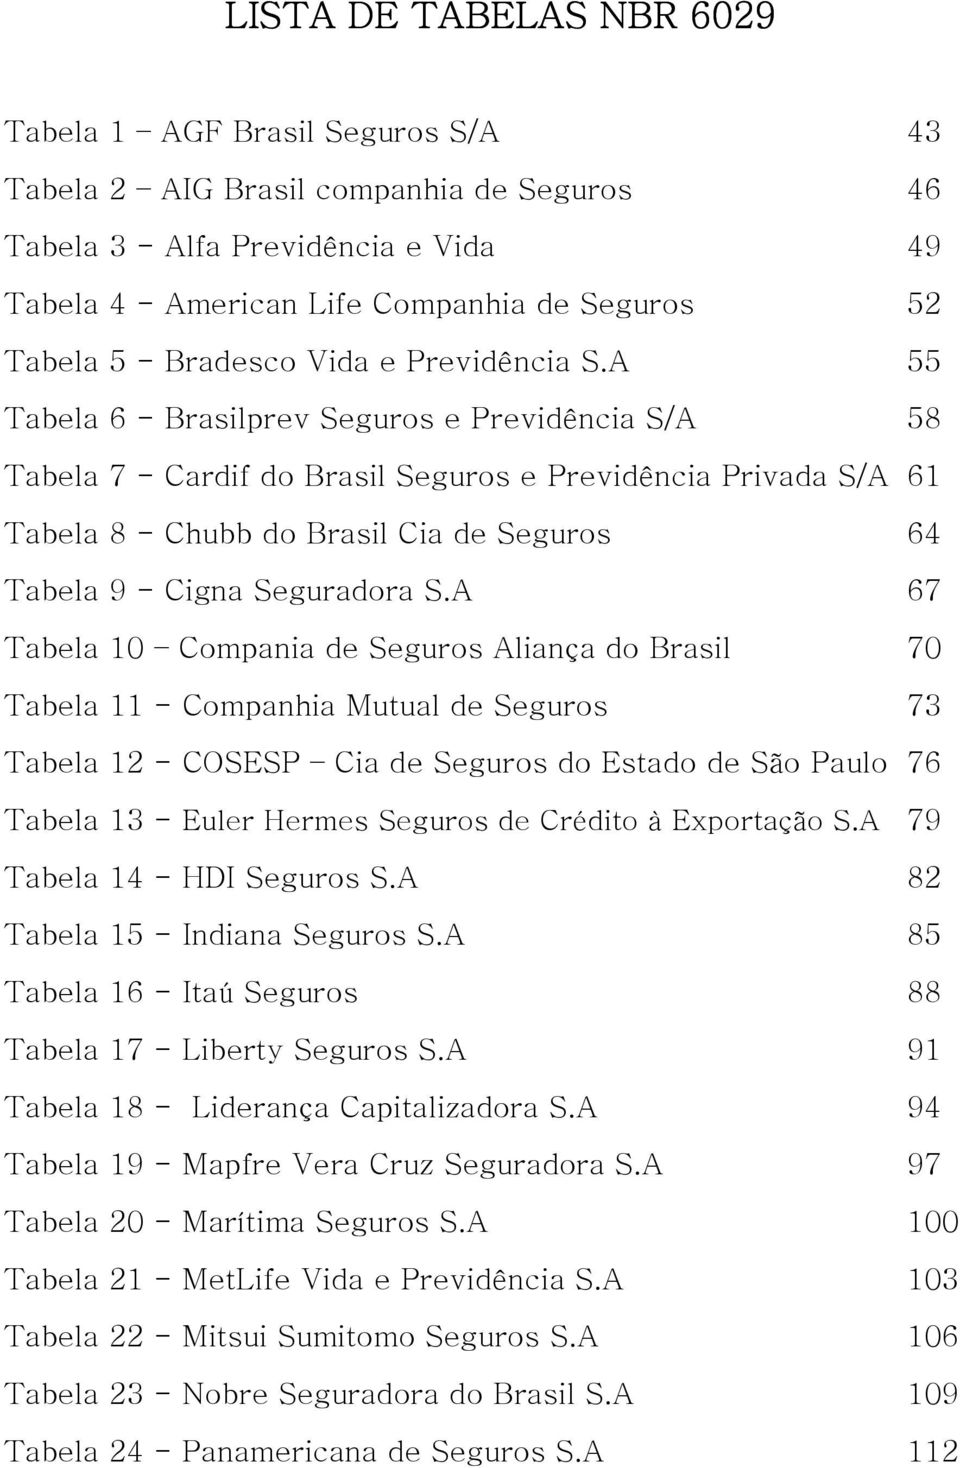 A 55 Tabela 6 - Brasilprev Seguros e Previdência S/A 58 Tabela 7 - Cardif do Brasil Seguros e Previdência Privada S/A 61 Tabela 8 - Chubb do Brasil Cia de Seguros 64 Tabela 9 - Cigna Seguradora S.